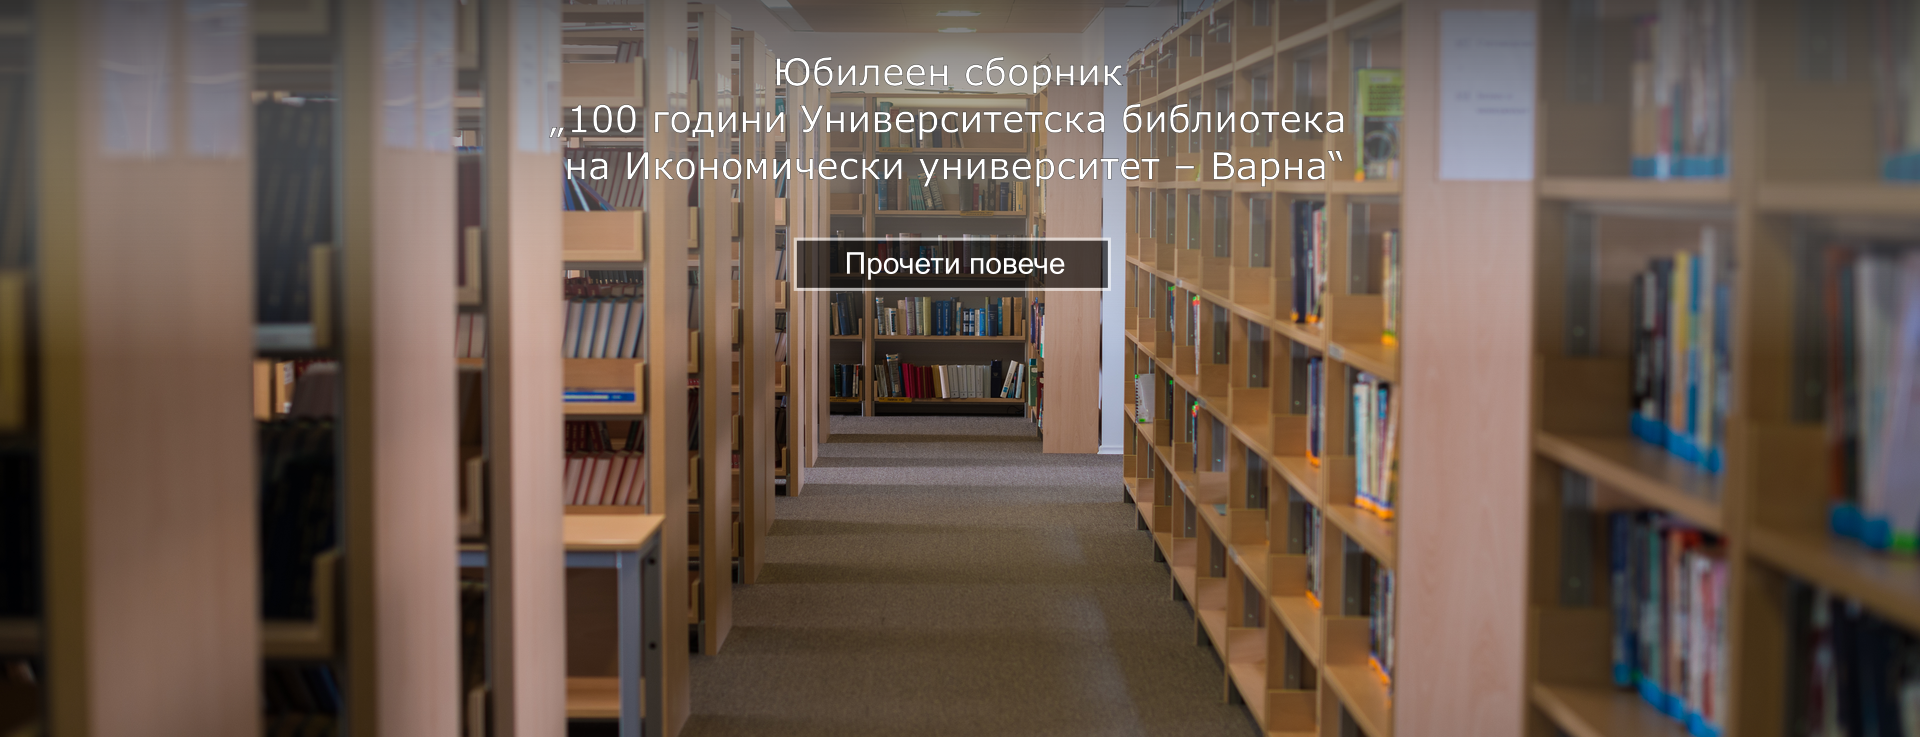 Юбилеен сборник "100г. университетска библиотека"